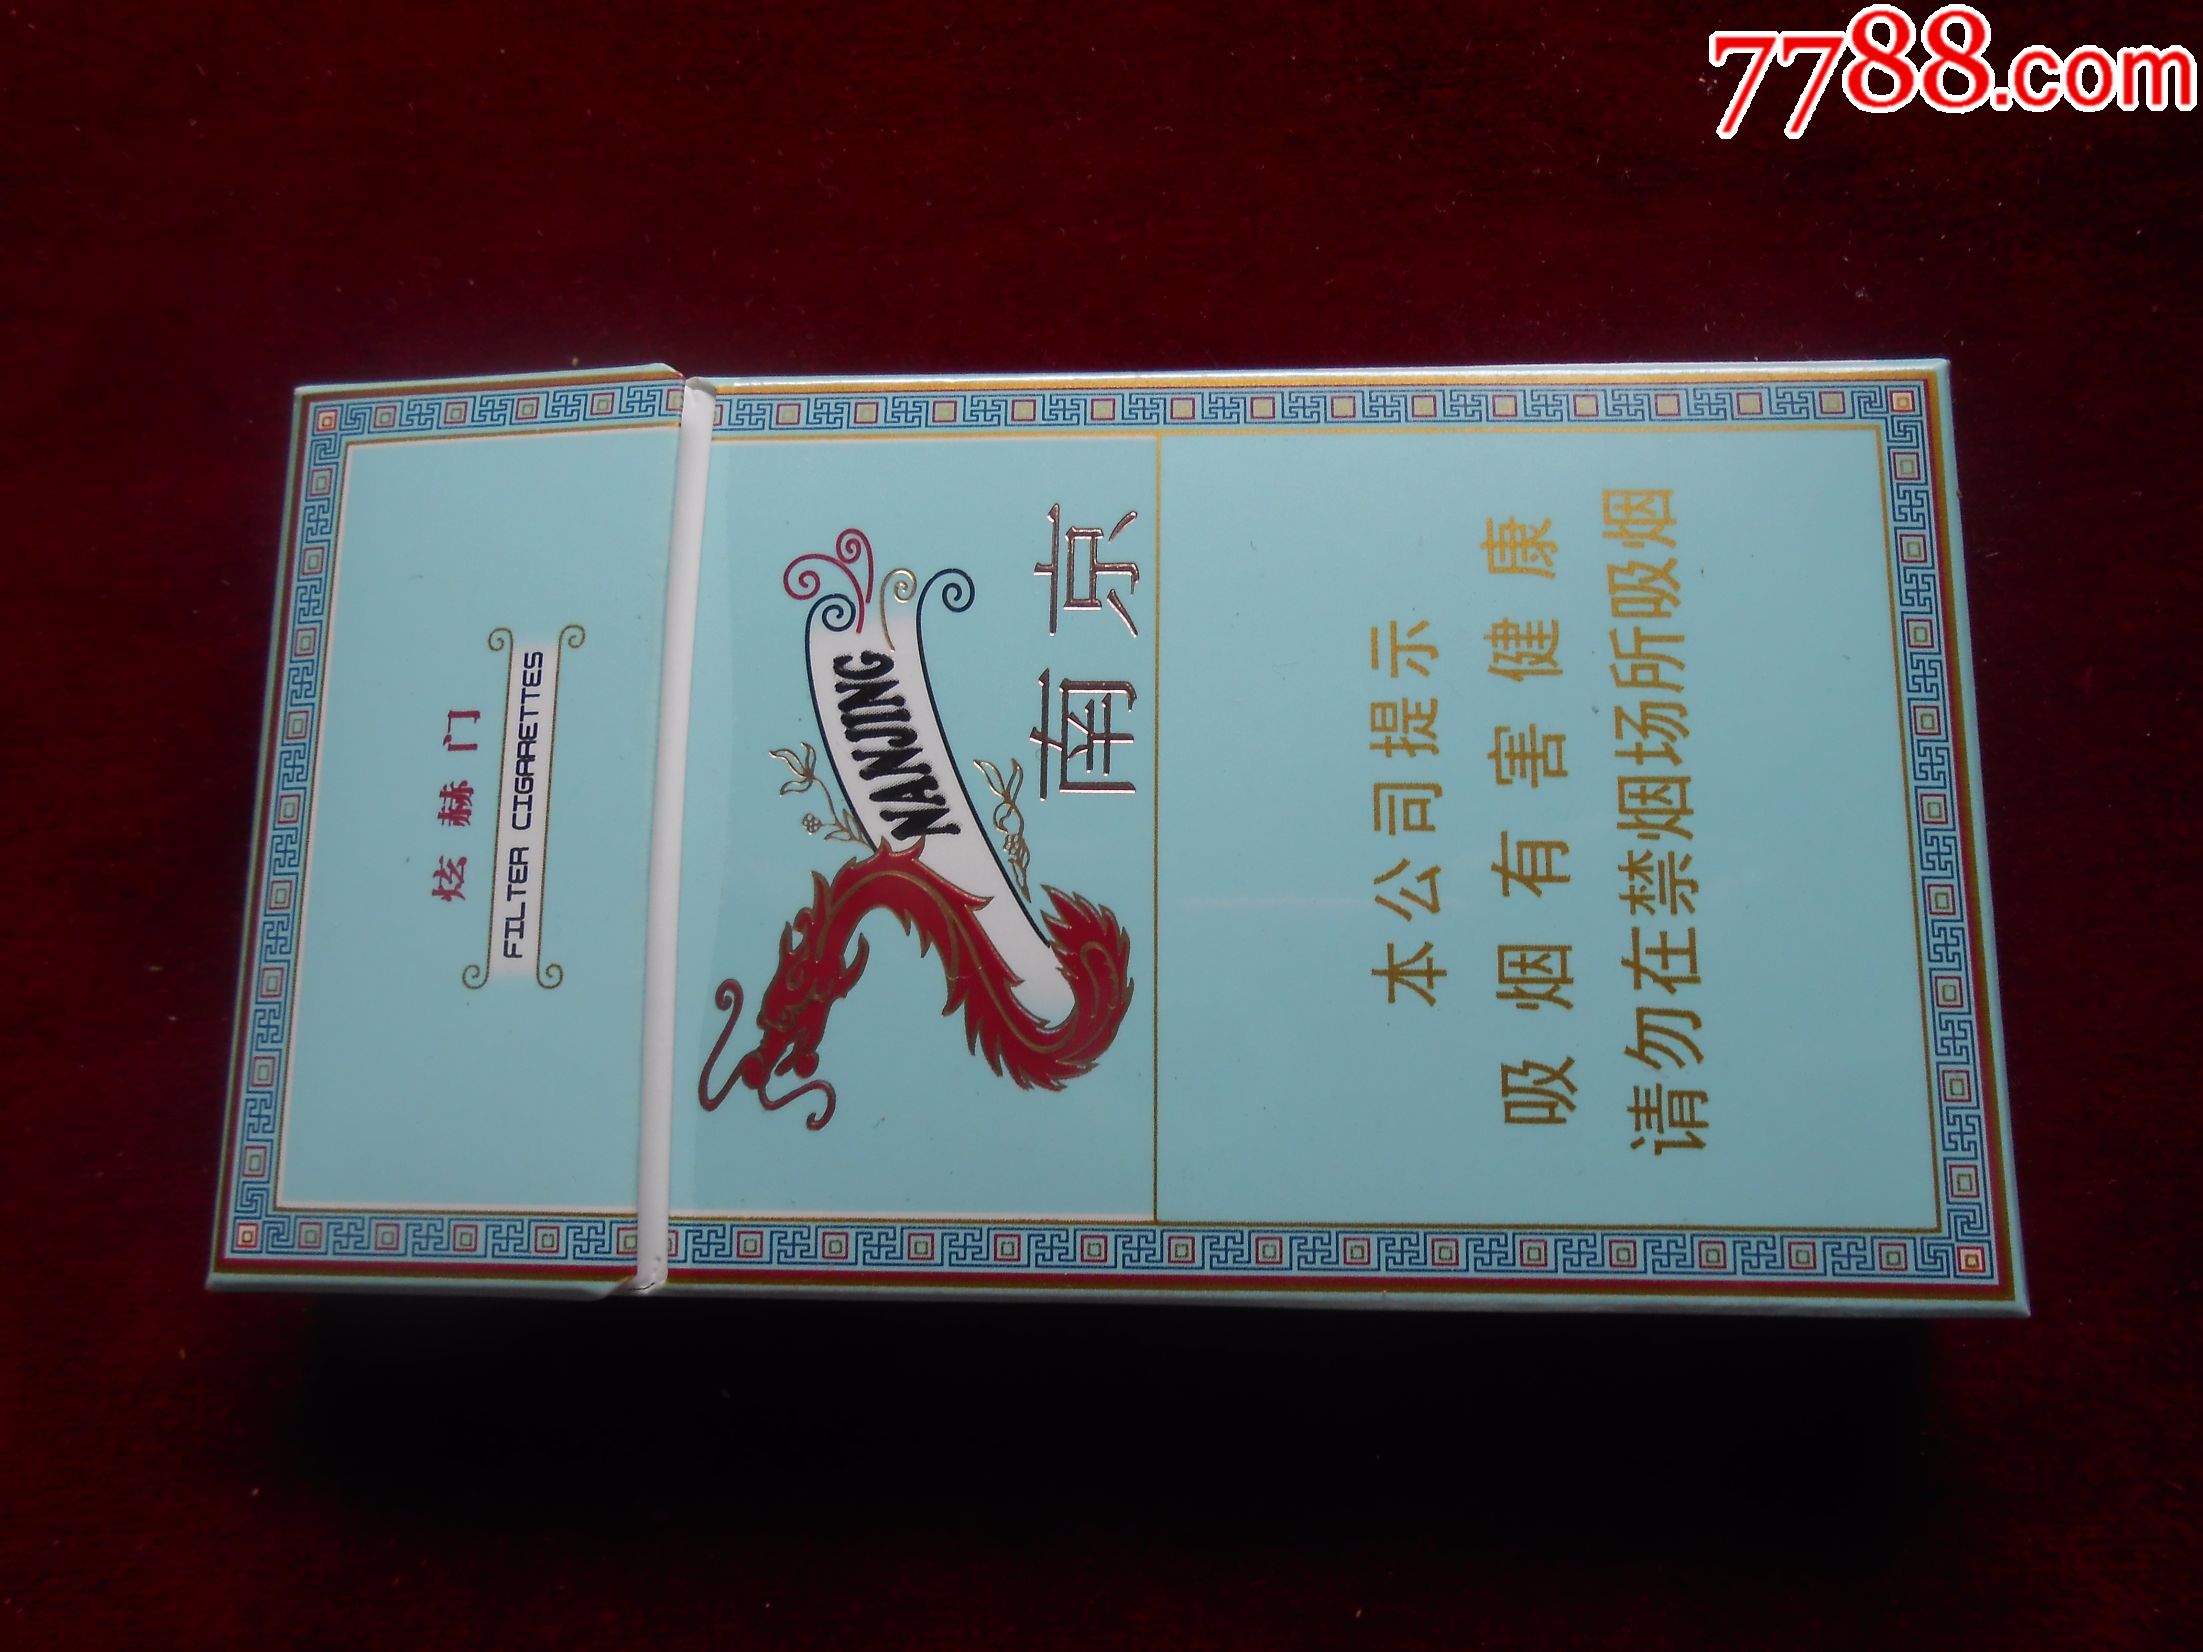 南京烟盒